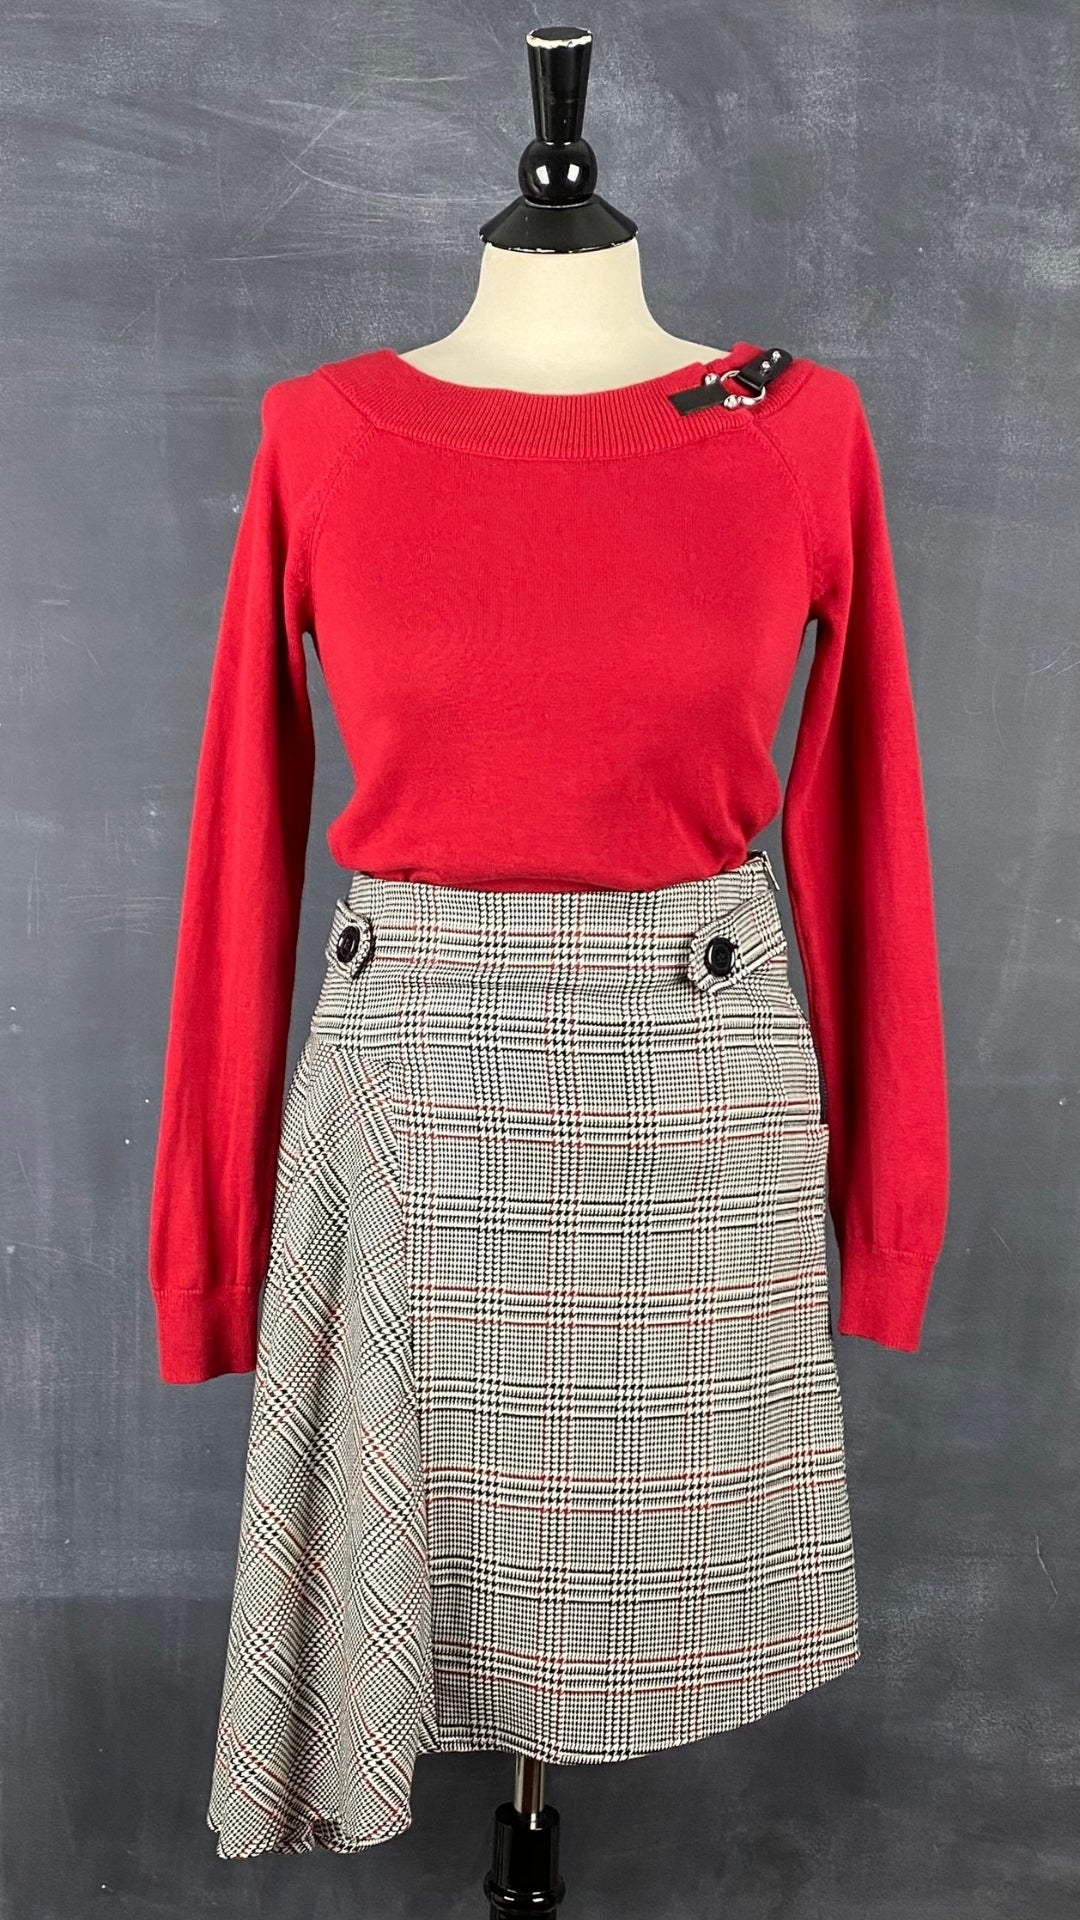 Chandail en tricot rouge col bateau Lauren Ralph Lauren, taille small. Vue de l'agencement avec la jupe asymétrique à carreaux Imperial.